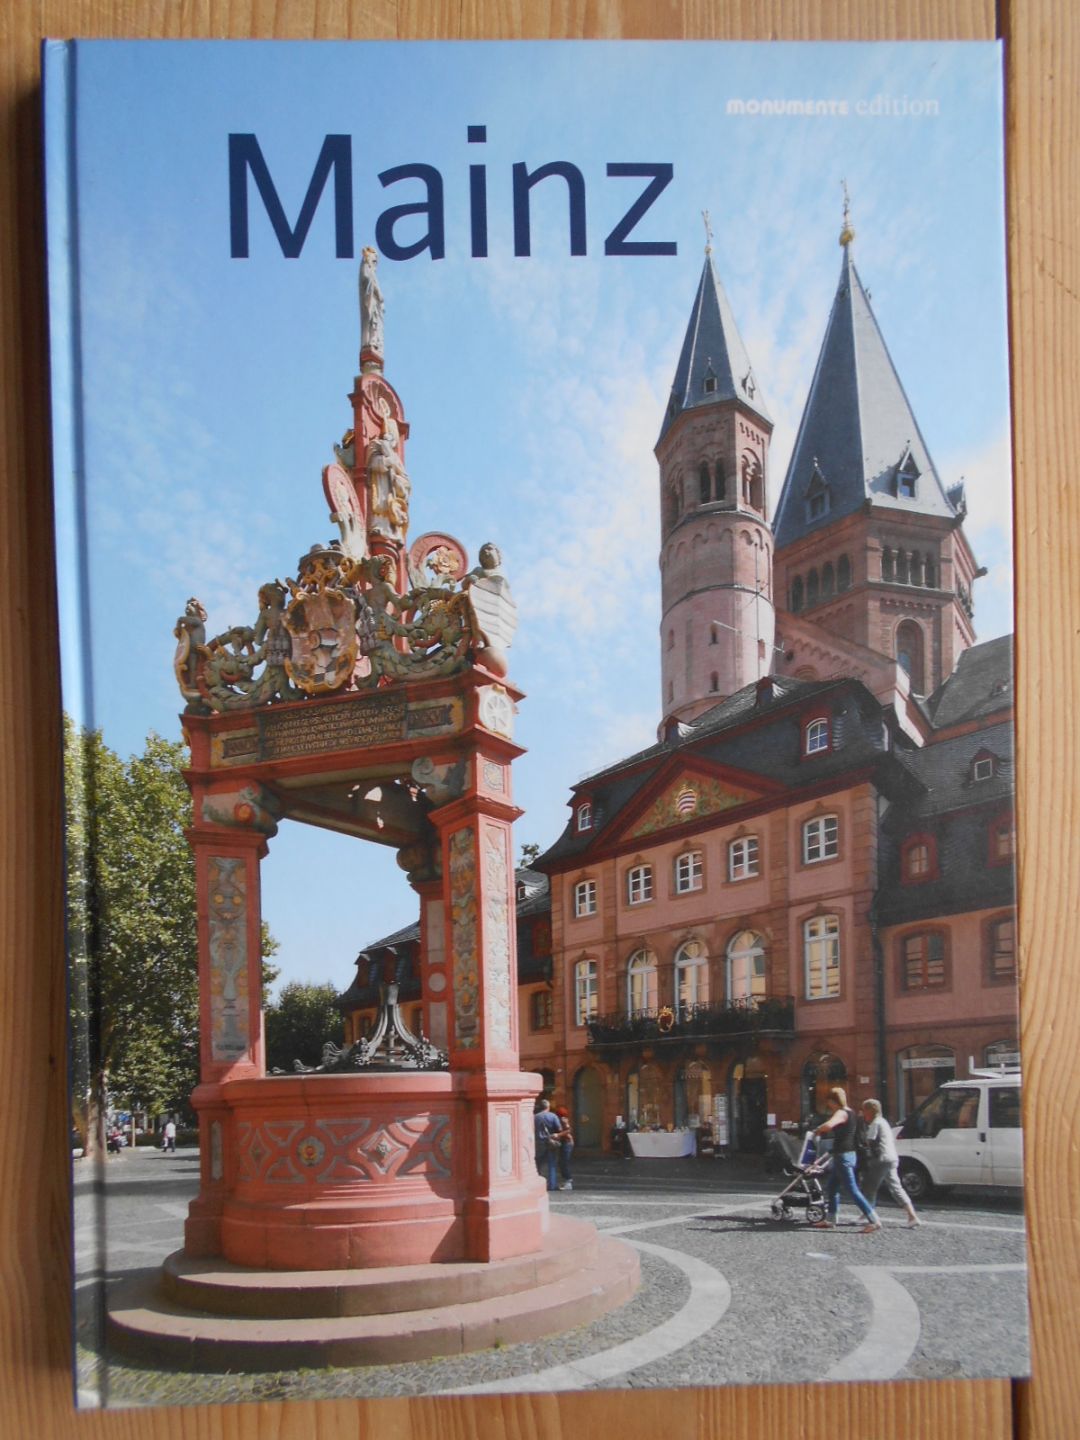 Mainz. Deutsche Stiftung Denkmalschutz. Angela Pfotenhauer ; Elmar Lixenfeld / Monumente-Edition - Pfotenhauer, Angela und Elmar Lixenfeld